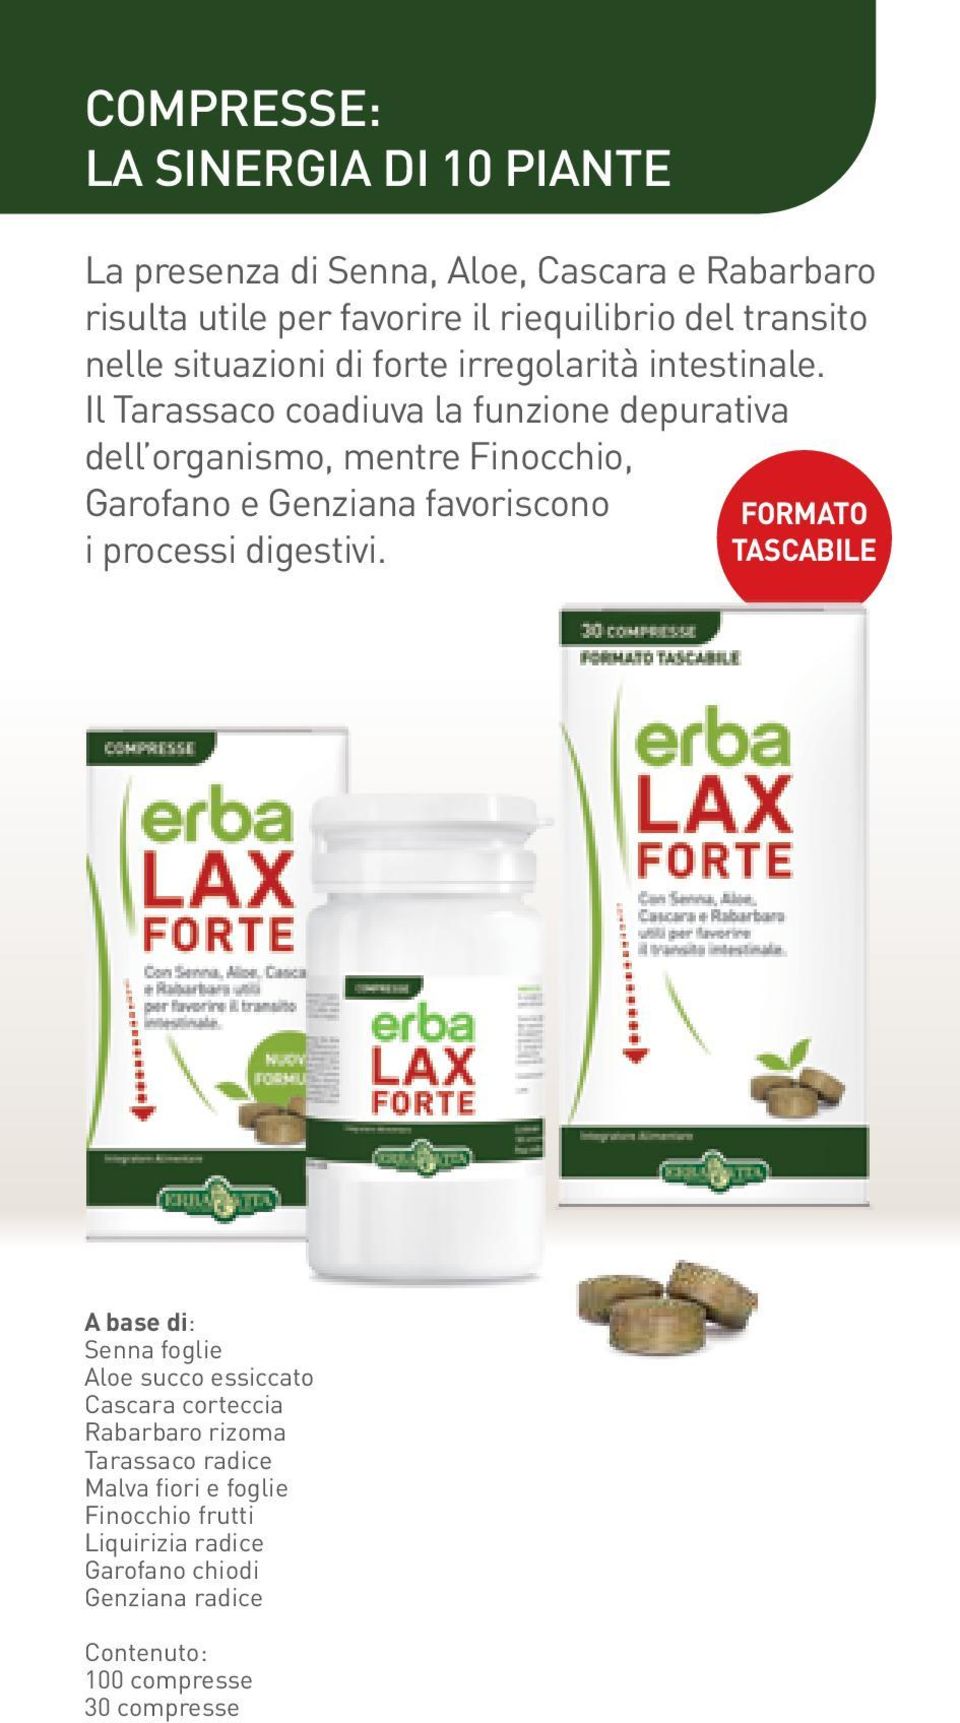 Il Tarassaco coadiuva la funzione depurativa dell organismo, mentre Finocchio, Garofano e Genziana favoriscono i processi digestivi.